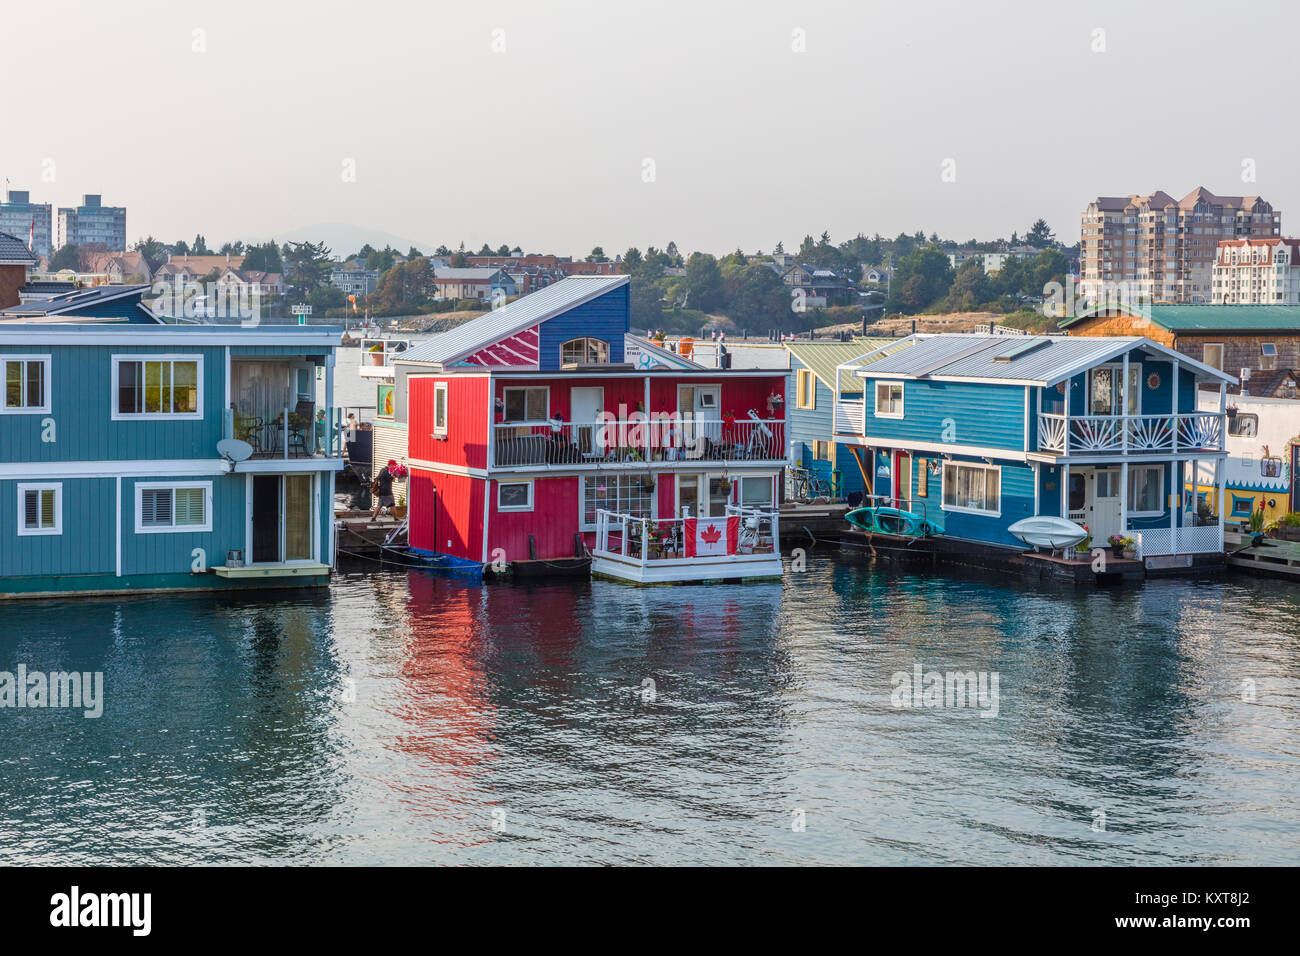 Fisherman's Wharf est un flotteur coloré accueil communauté à Victoria sur l'île de Vancouver en Colombie-Britannique, Canada Banque D'Images